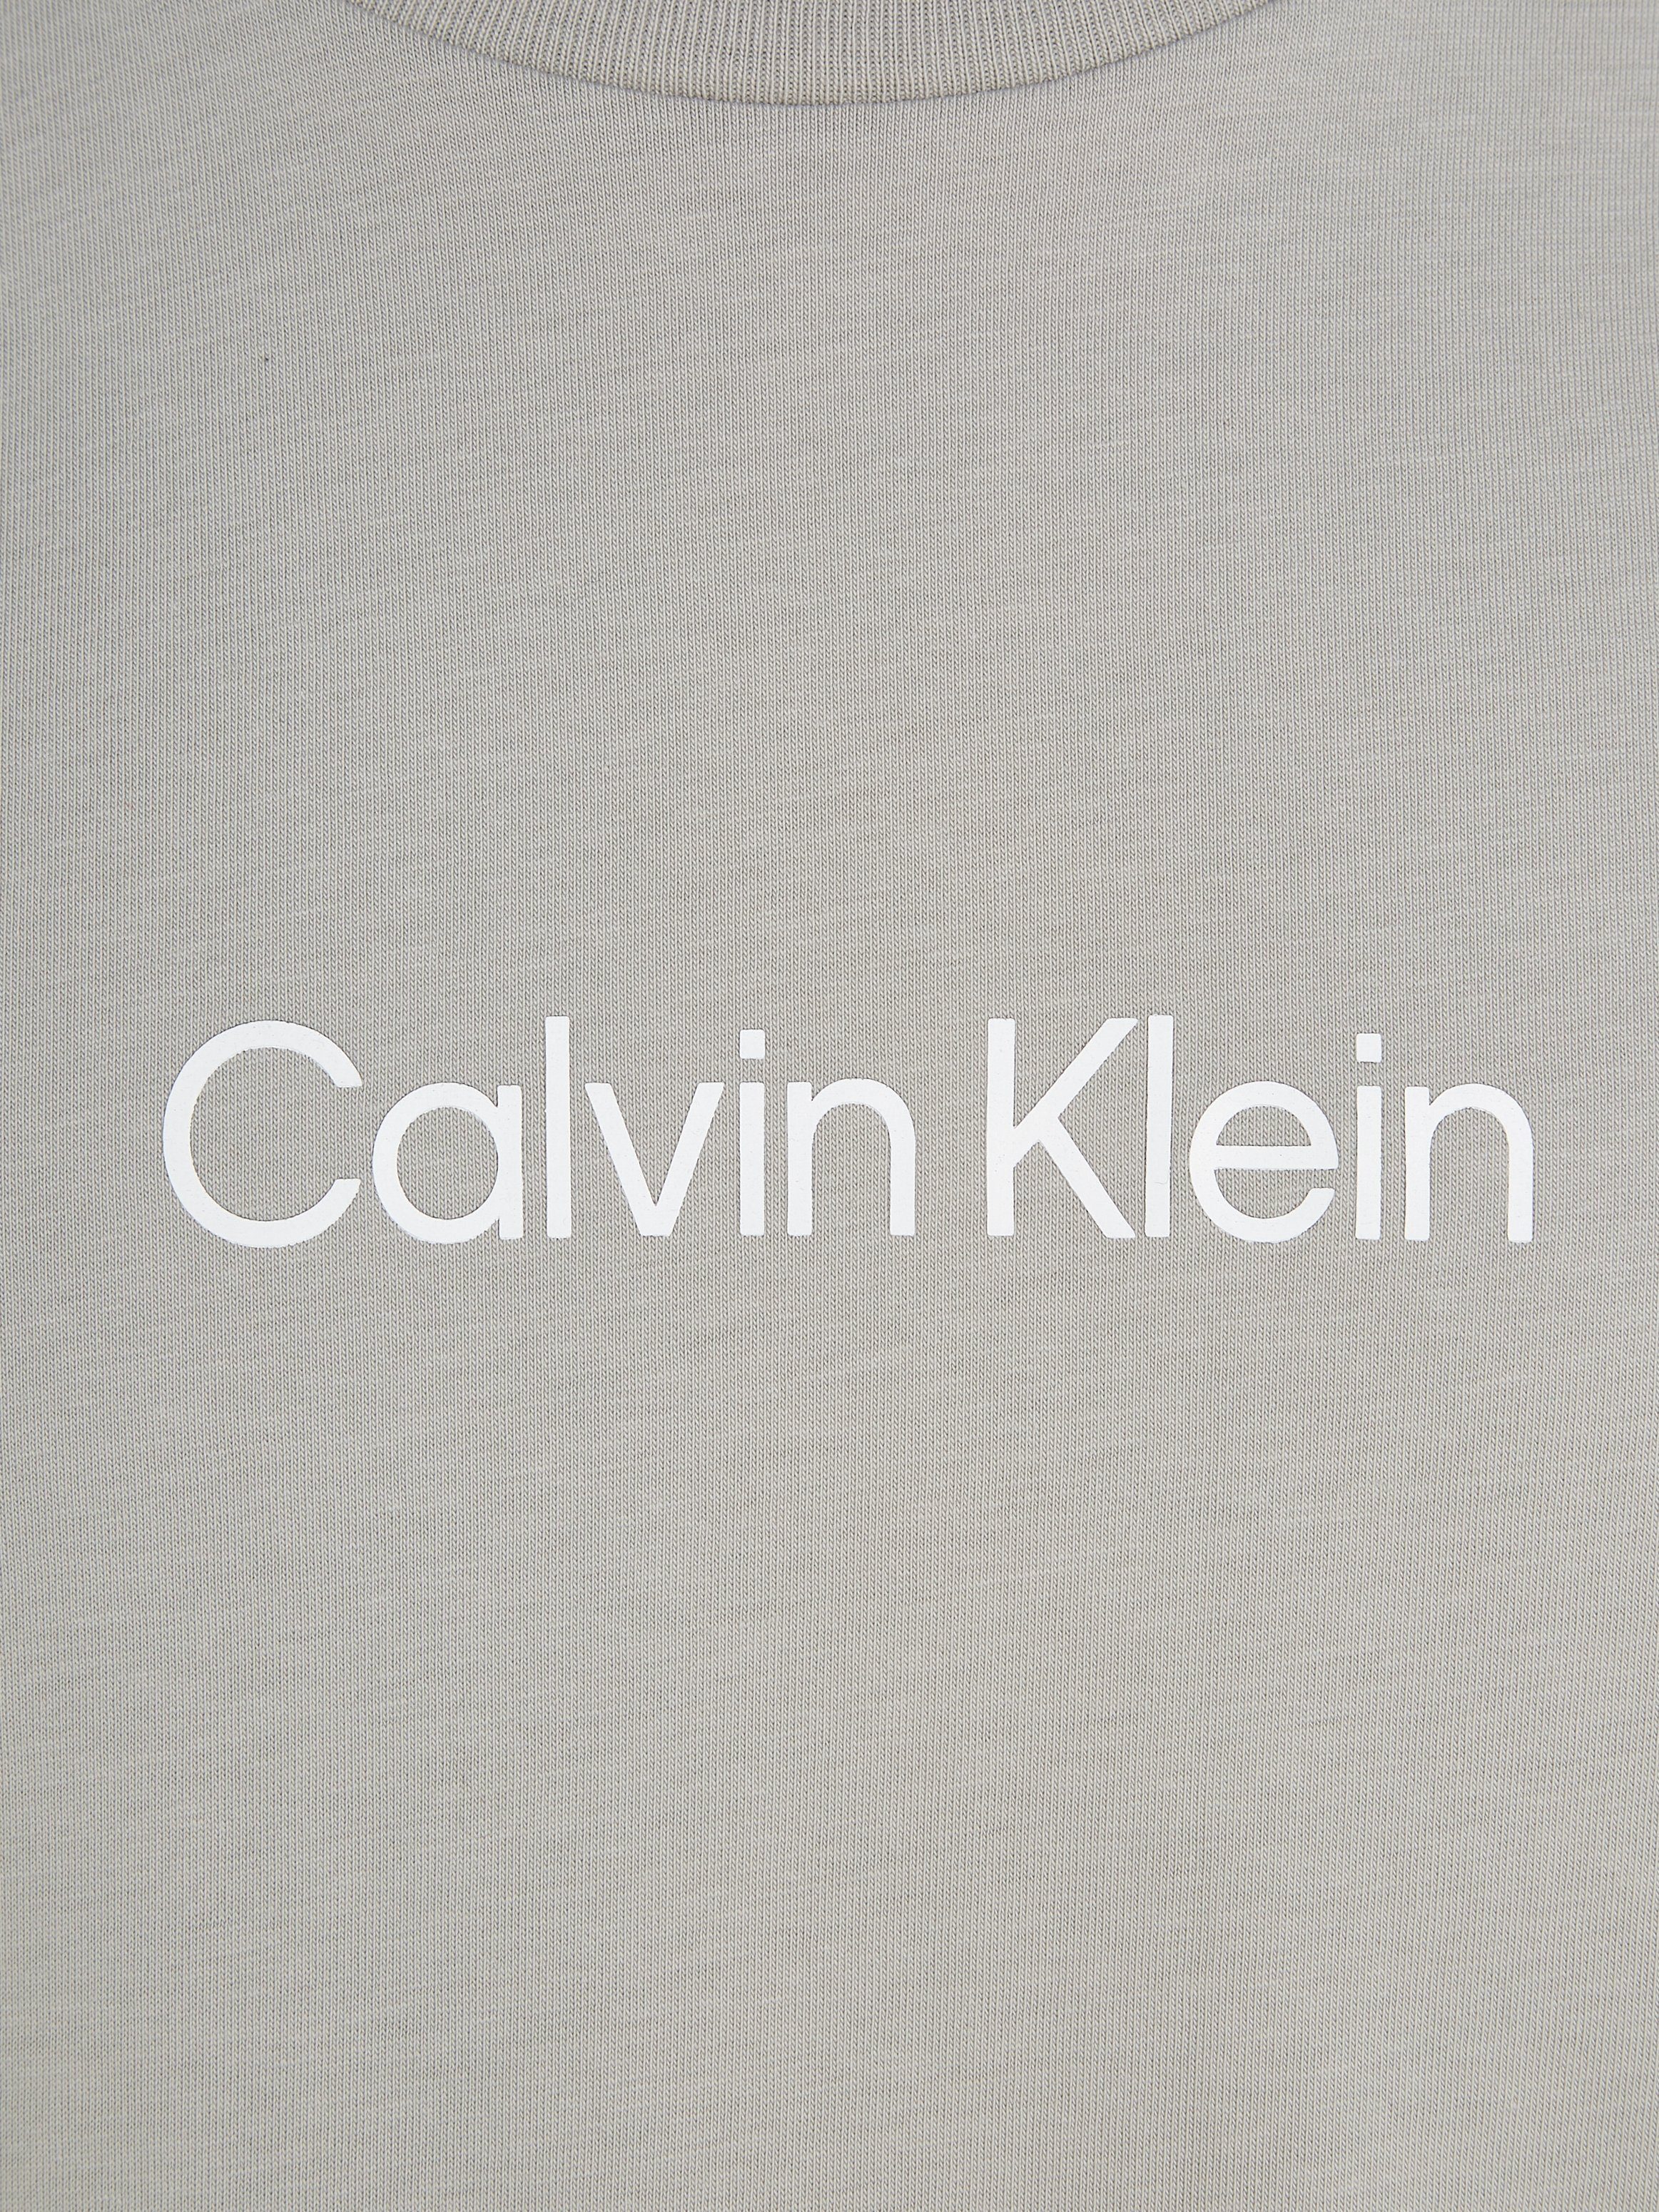 Calvin Klein aufgedrucktem mit LOGO COMFORT Ghost Gray Markenlabel HERO T-SHIRT T-Shirt